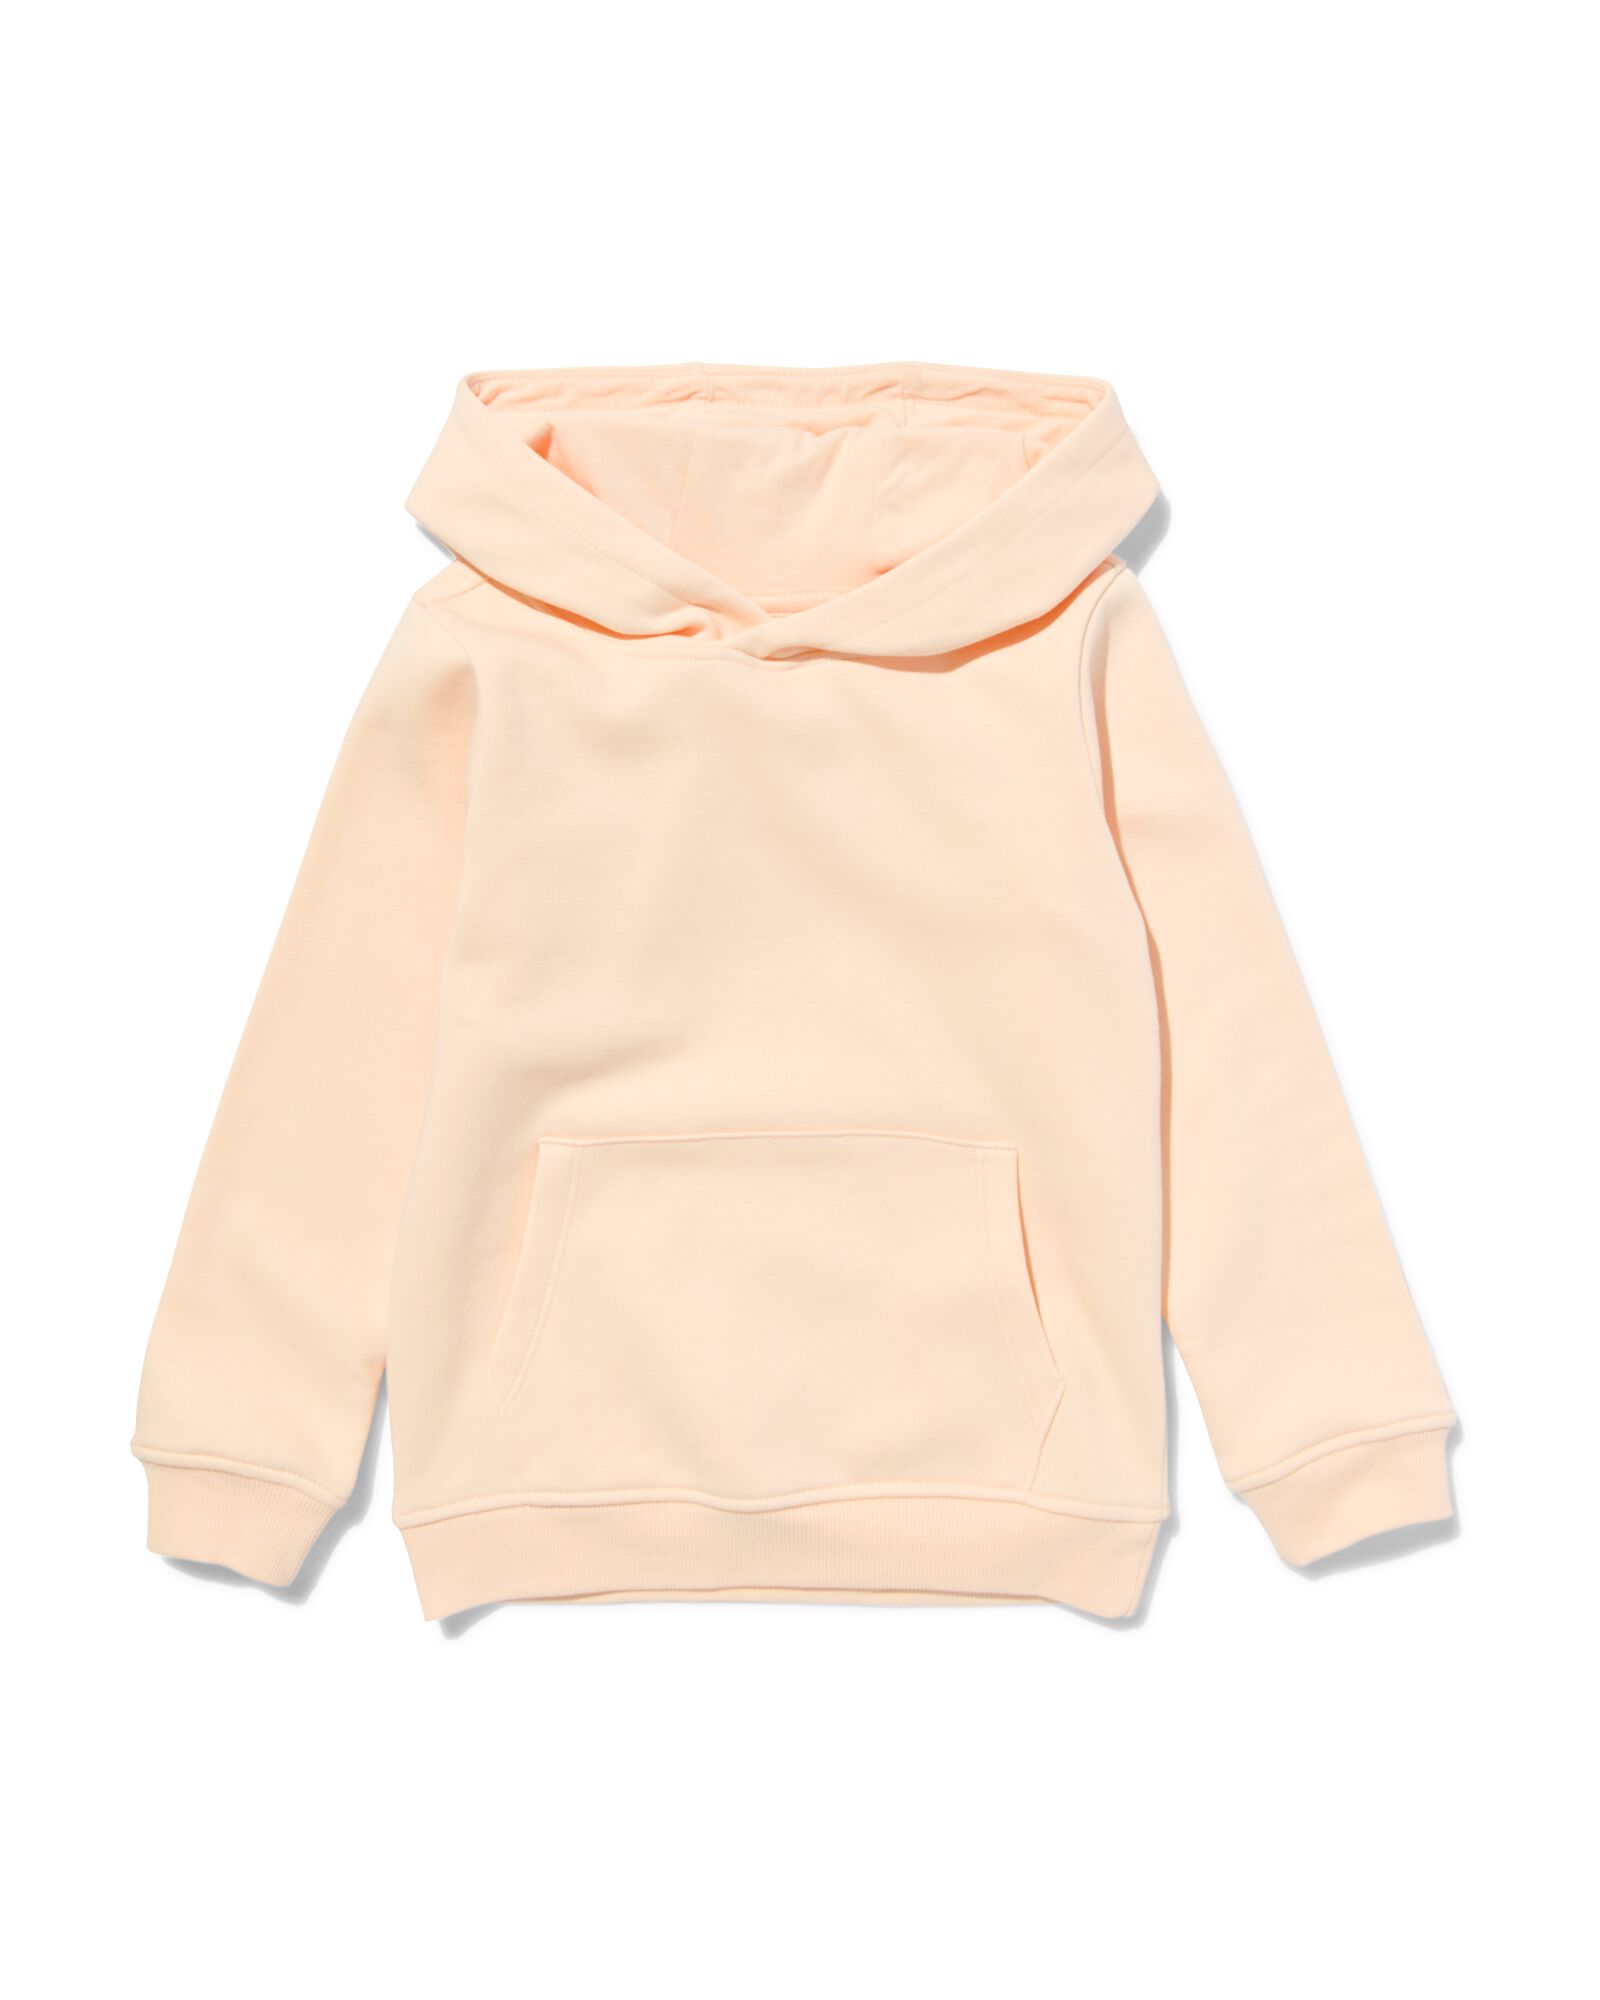 kinder hoodie met kangeroezak roze roze - 1000032254 - HEMA